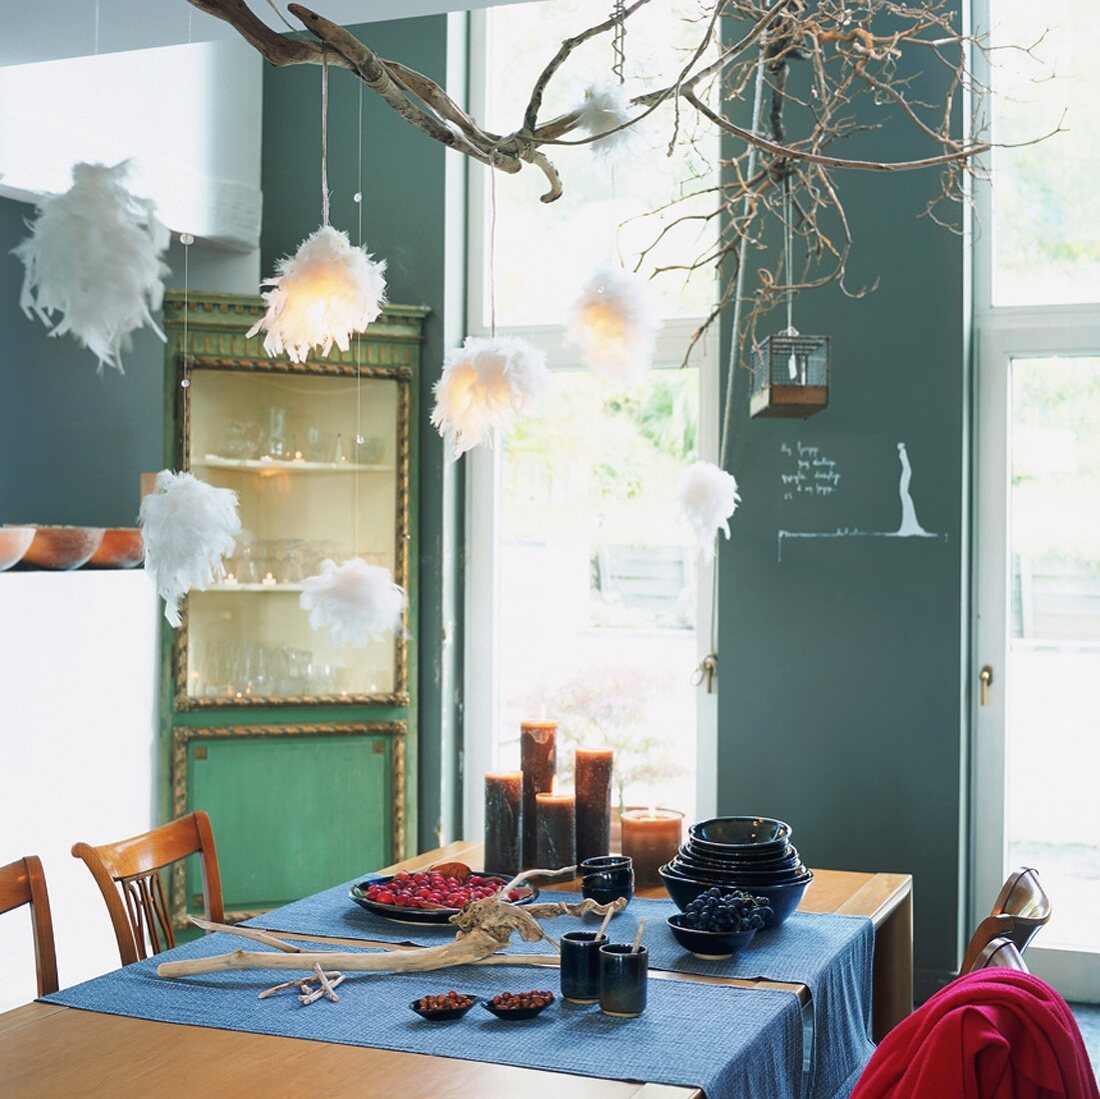 Eine selbstgebaute Hängeleuchte aus Zweigen und Federbällen über einem Esstisch mit Läufern, Kerzen und Tonschalen